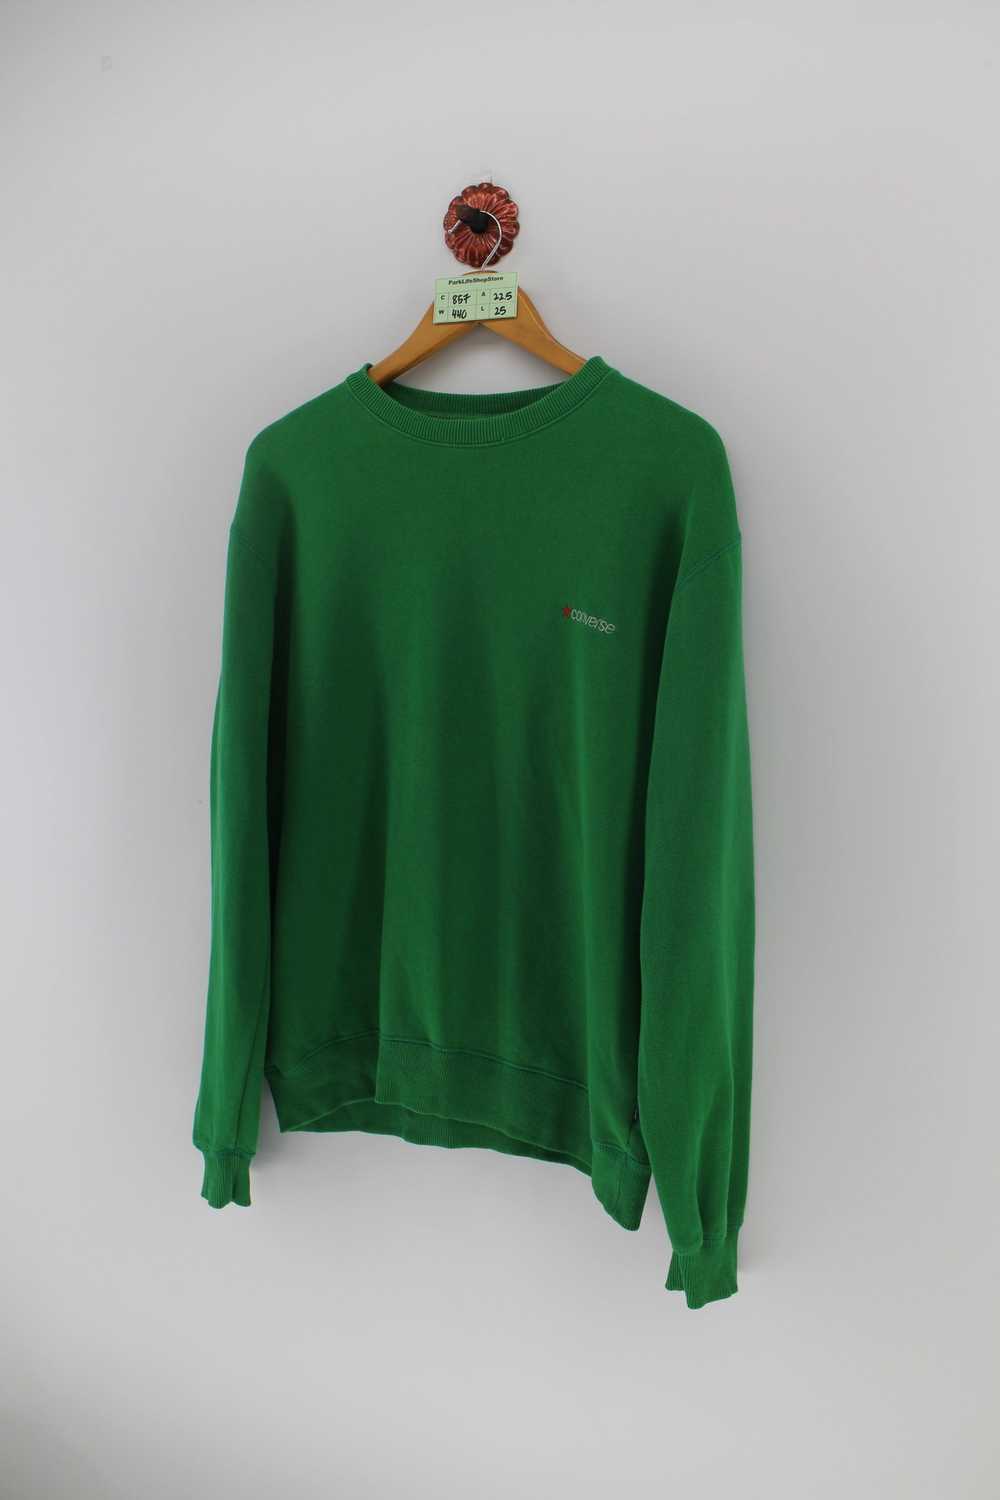 Converse Vintage 90s CONVERSE Pullover Sweatshirt… - image 2